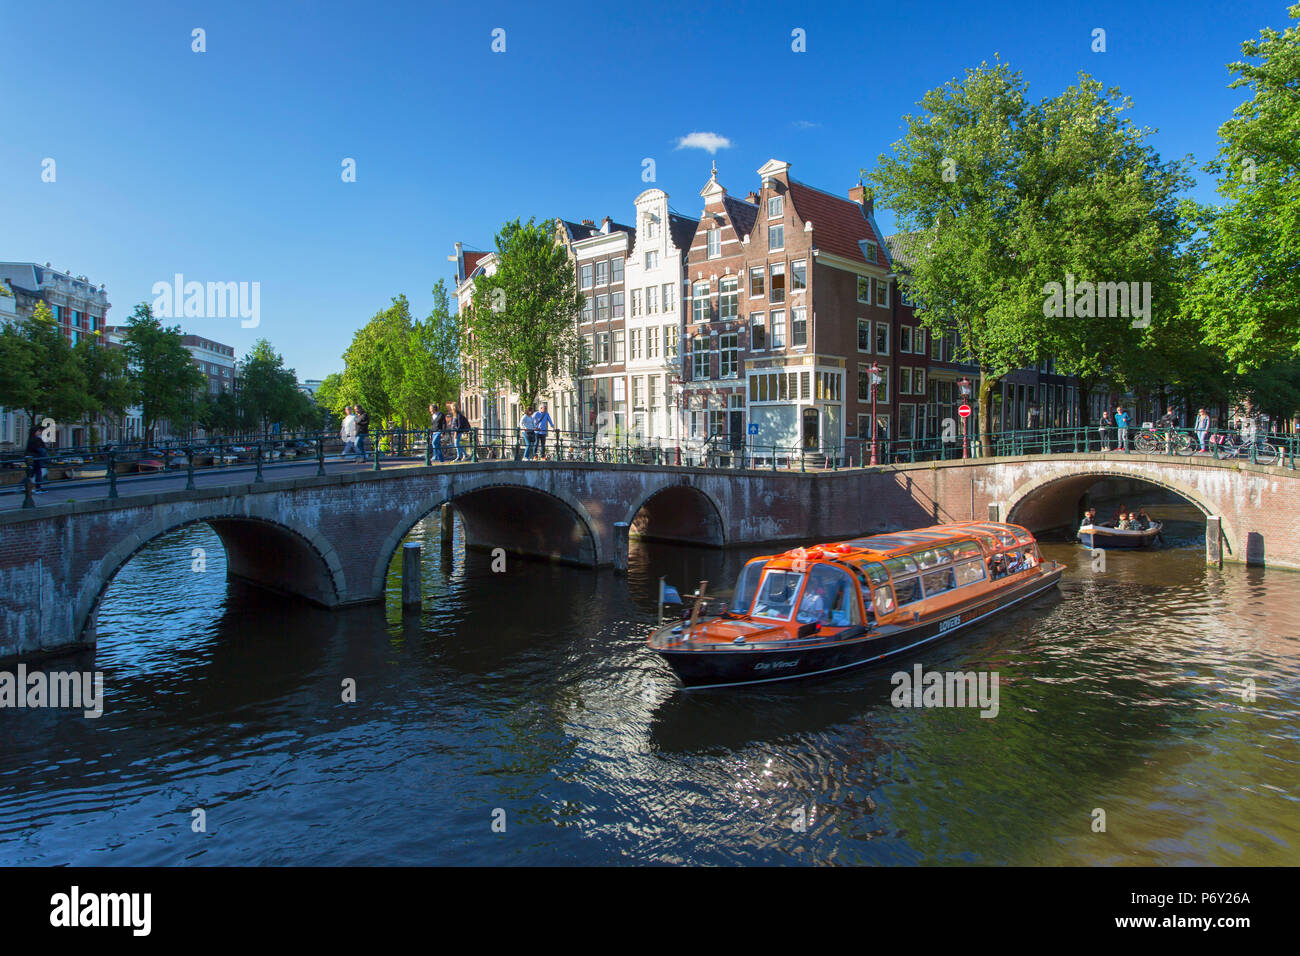 Bateaux de touristes sur le canal Prinsengracht, Amsterdam, Pays-Bas Banque D'Images